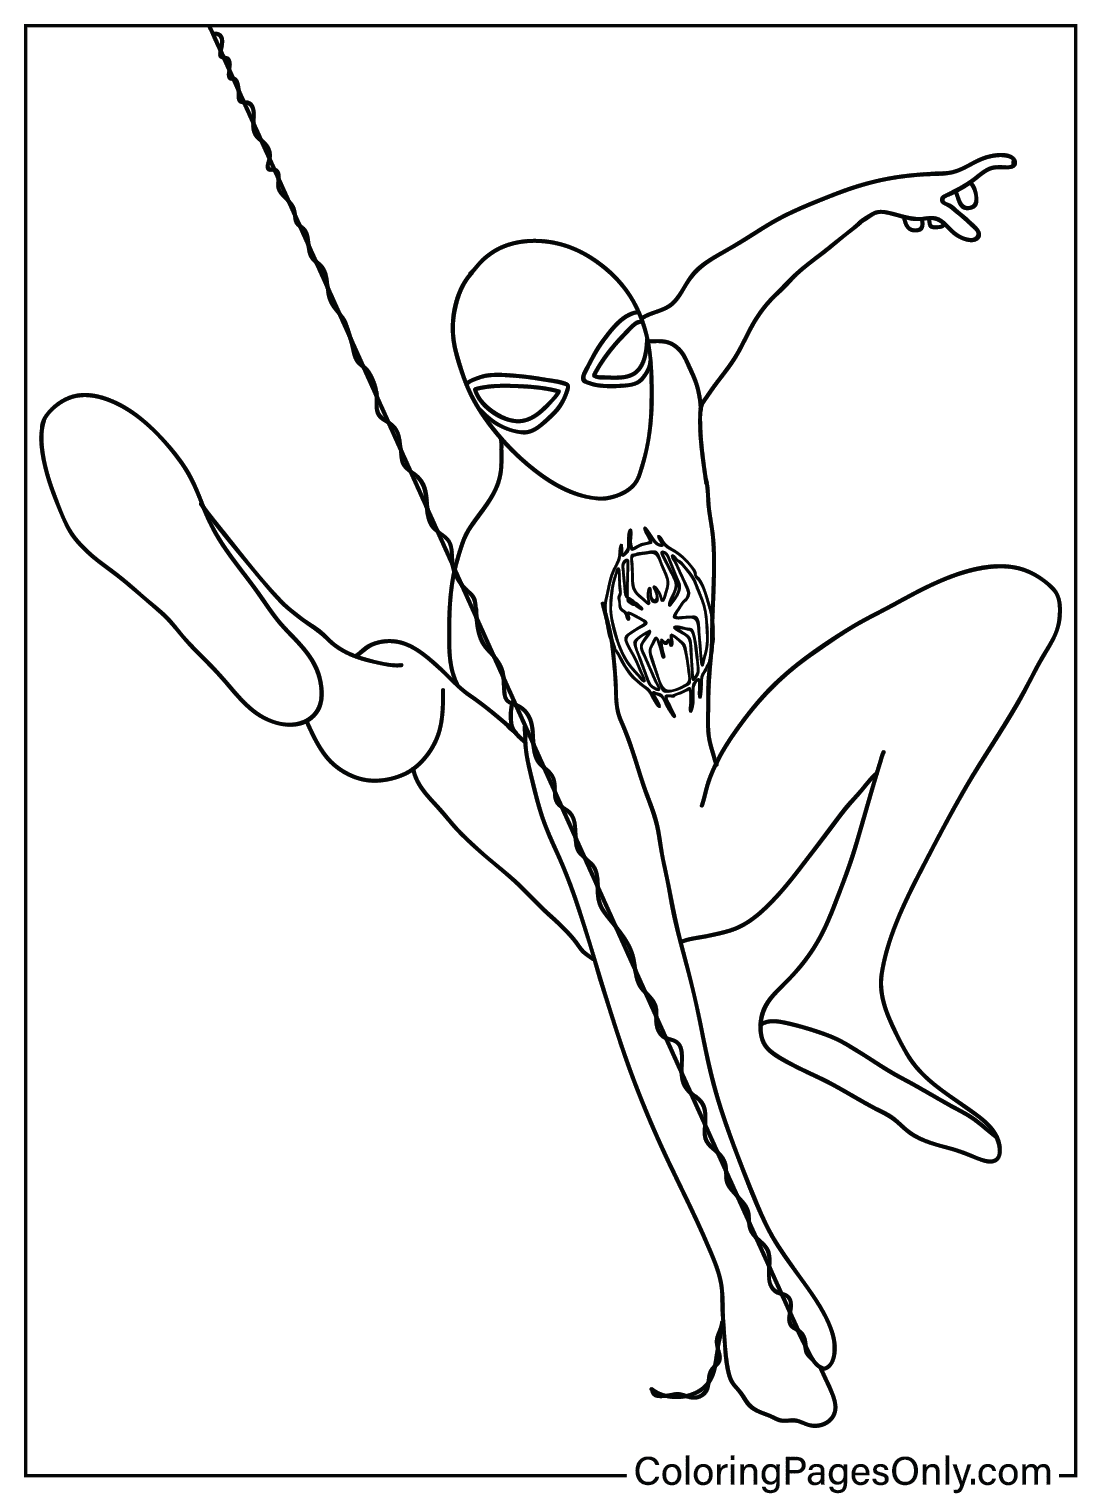 Раскраски Человек-паук через паука для детей из мультфильма «Человек-паук: Через паука»